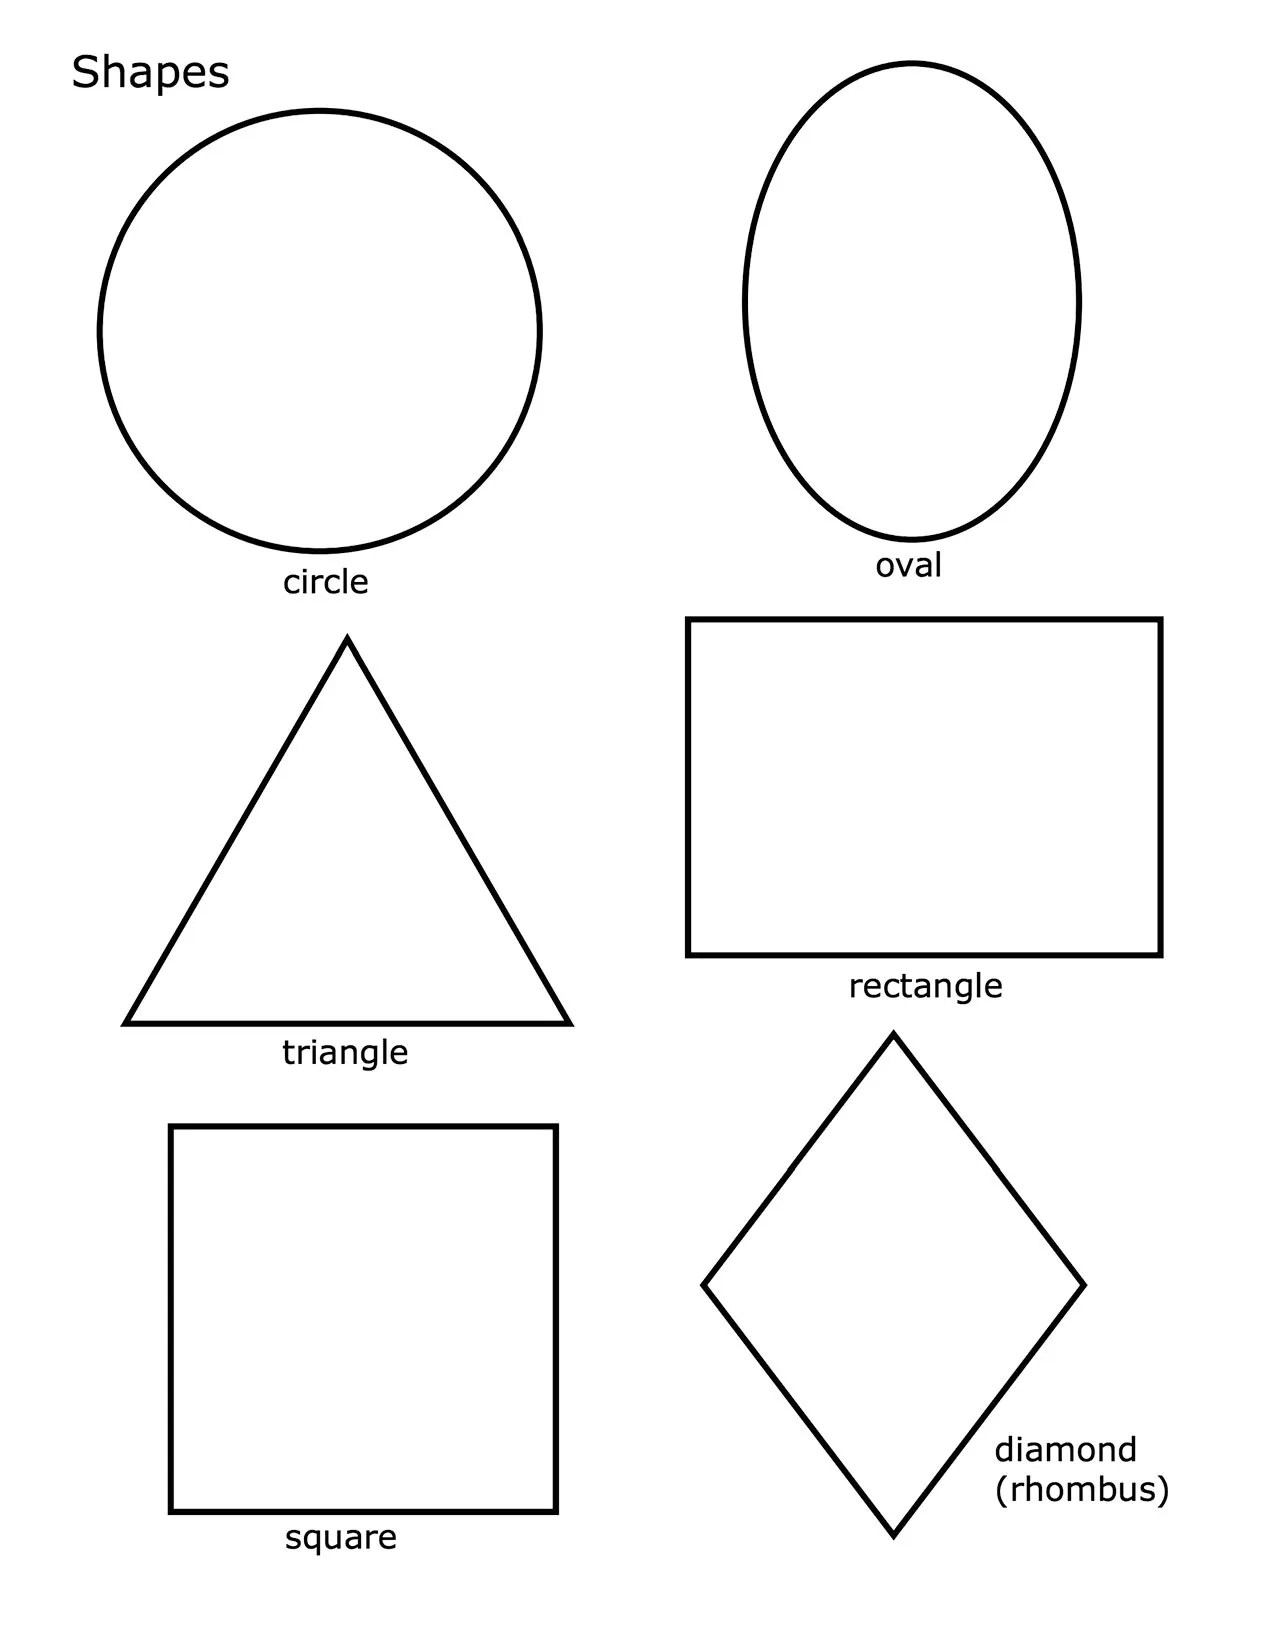 Раскраска фигура распечатать. Фигуры круг квадрат треугольник овал. Трафареты квадрат круг треугольник овал. Геометрические фигуры для дите. Геометрические фигуры для дошкольников.